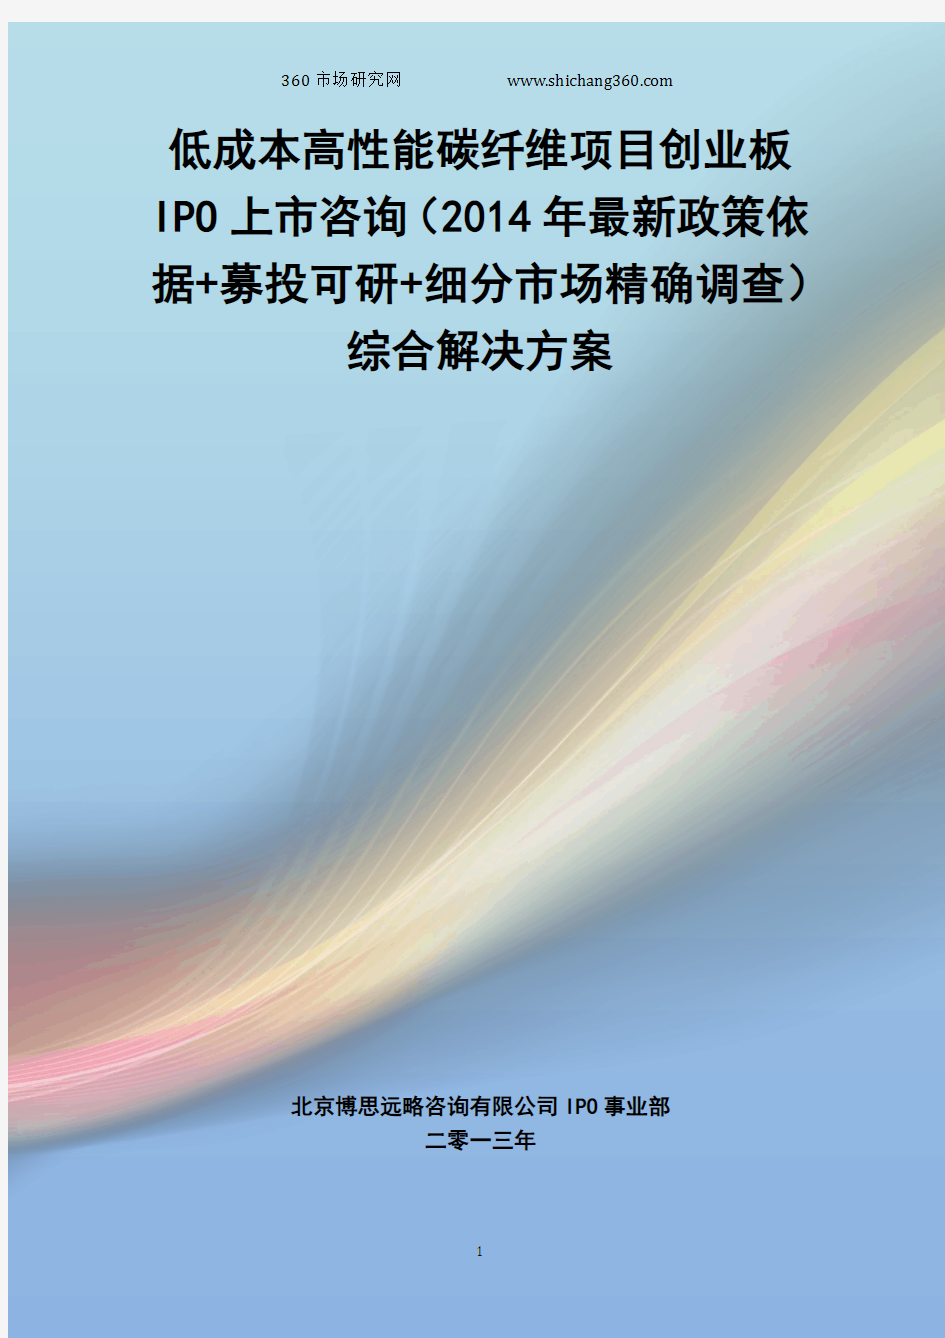 低成本高性能碳纤维IPO上市咨询(2014年最新政策+募投可研+细分市场调查)综合解决方案